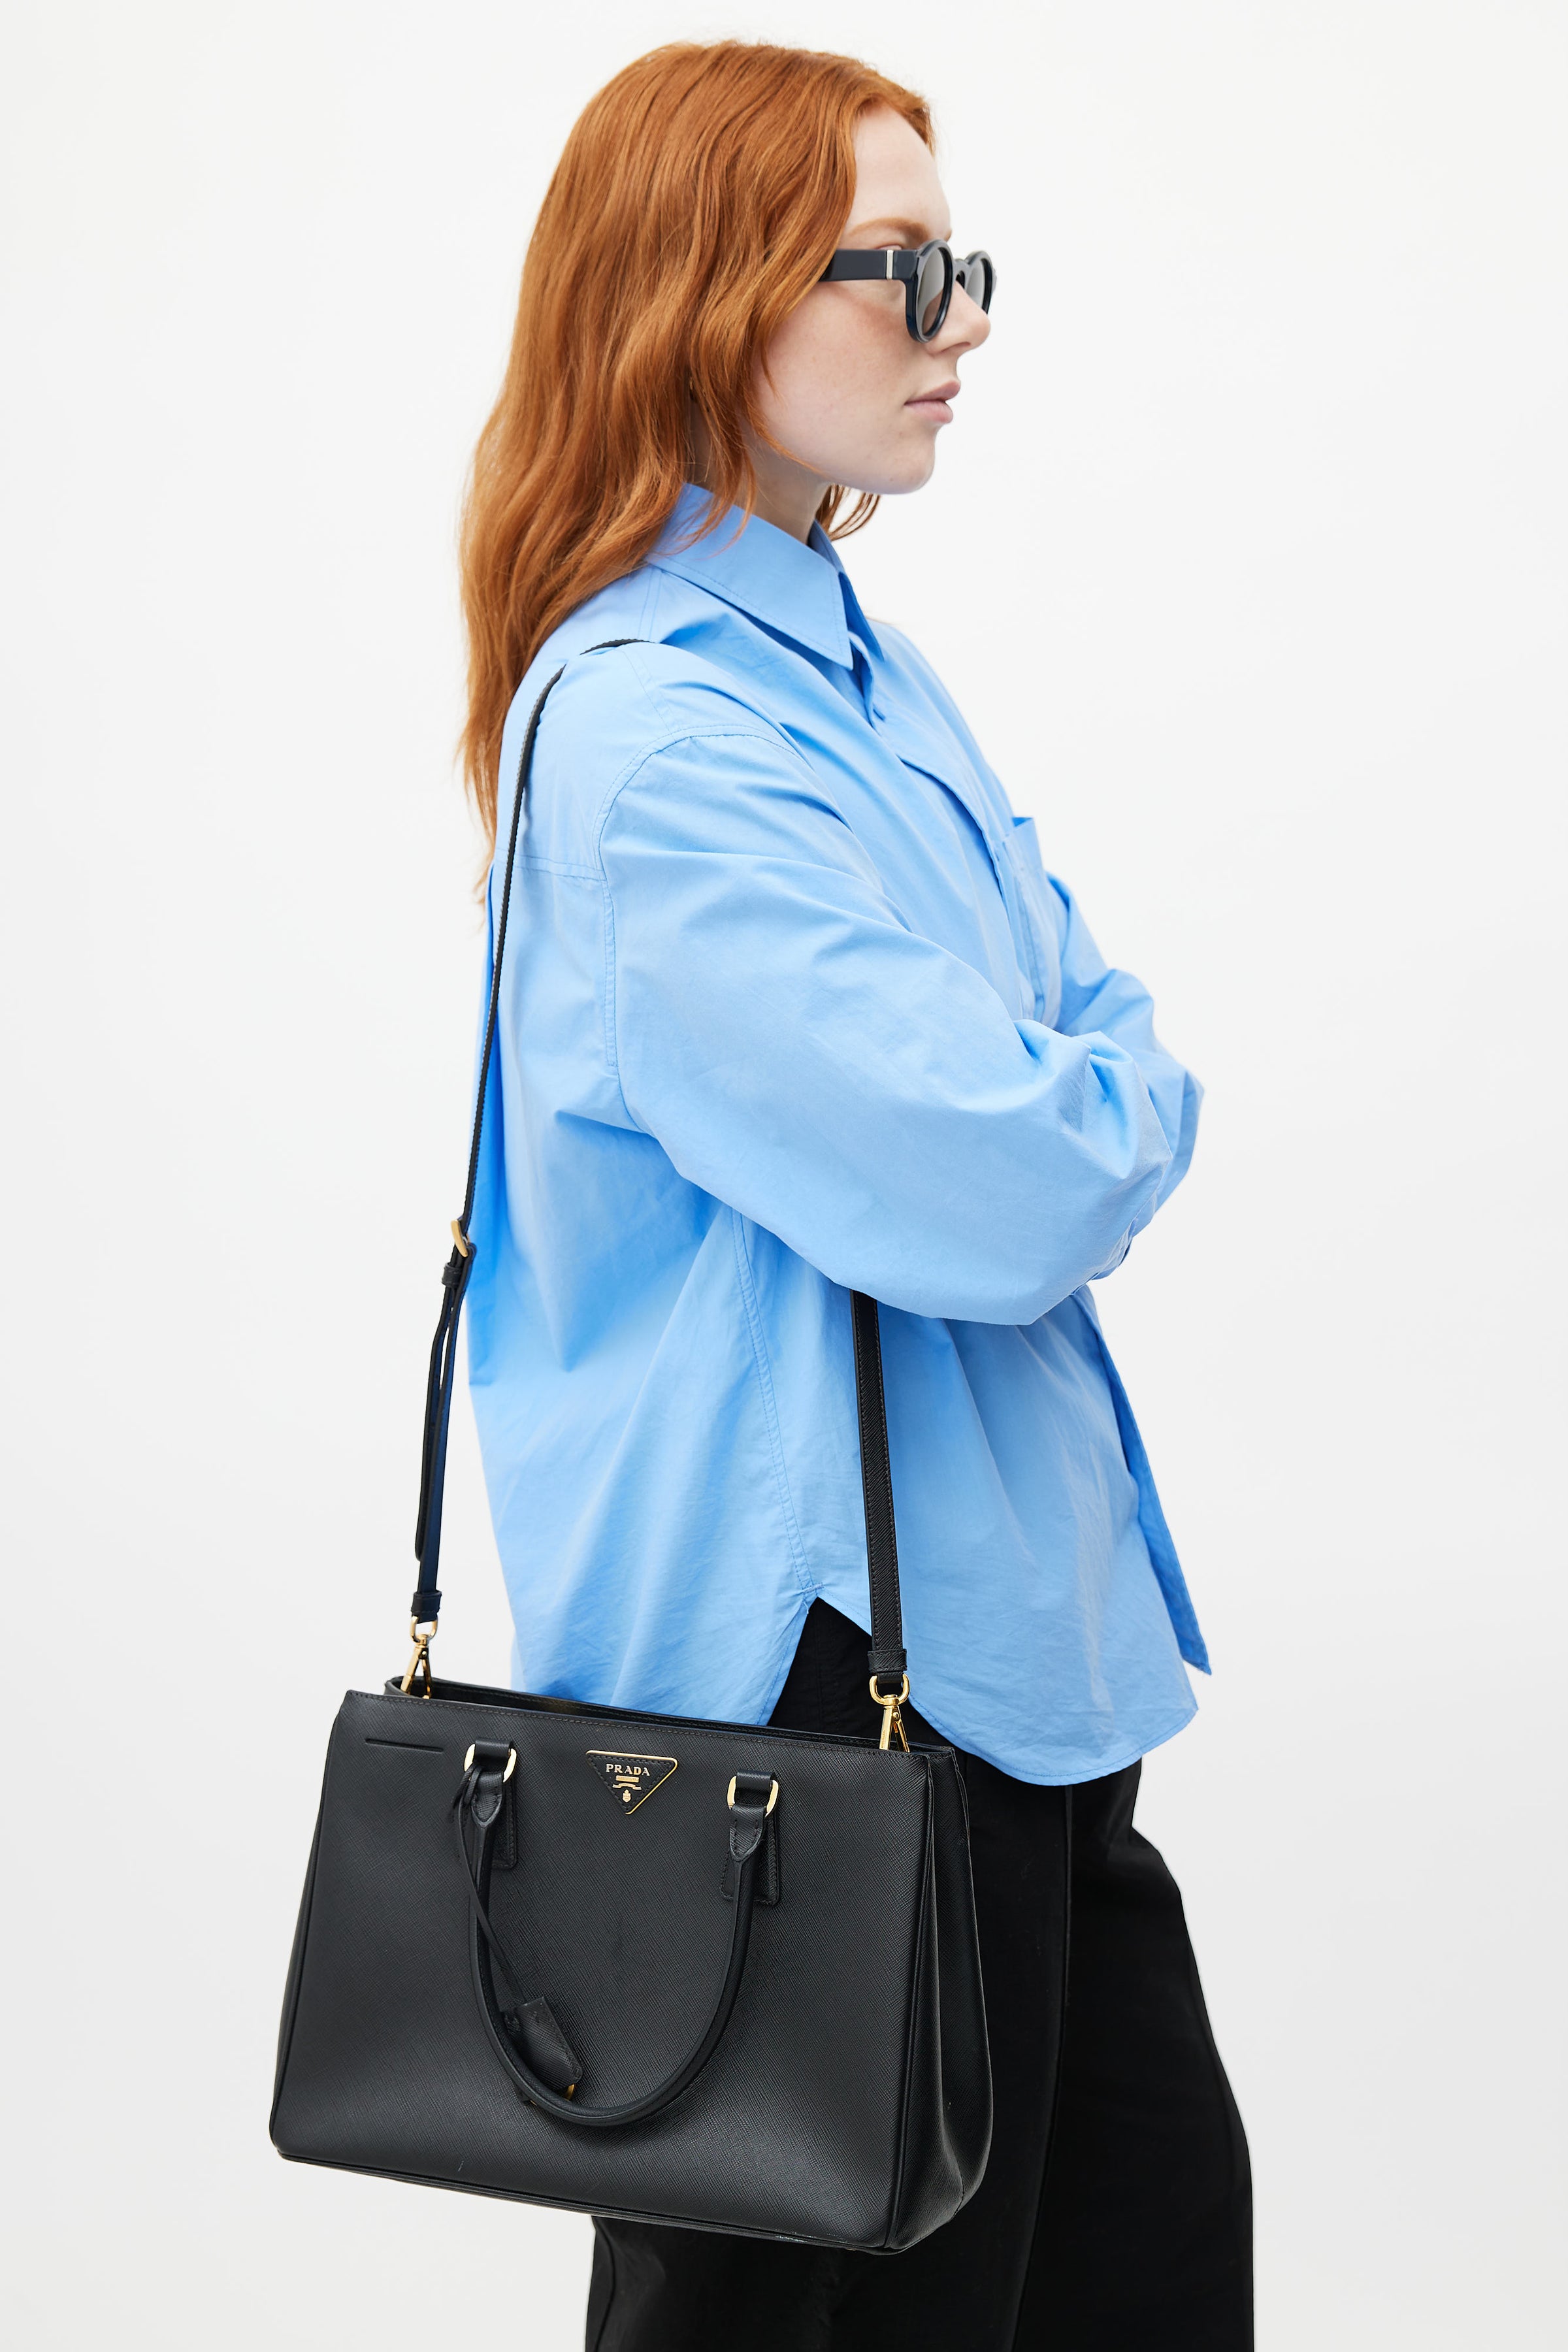 Prada // Grey Galleria Small Saffiano Leather Bag – VSP Consignment